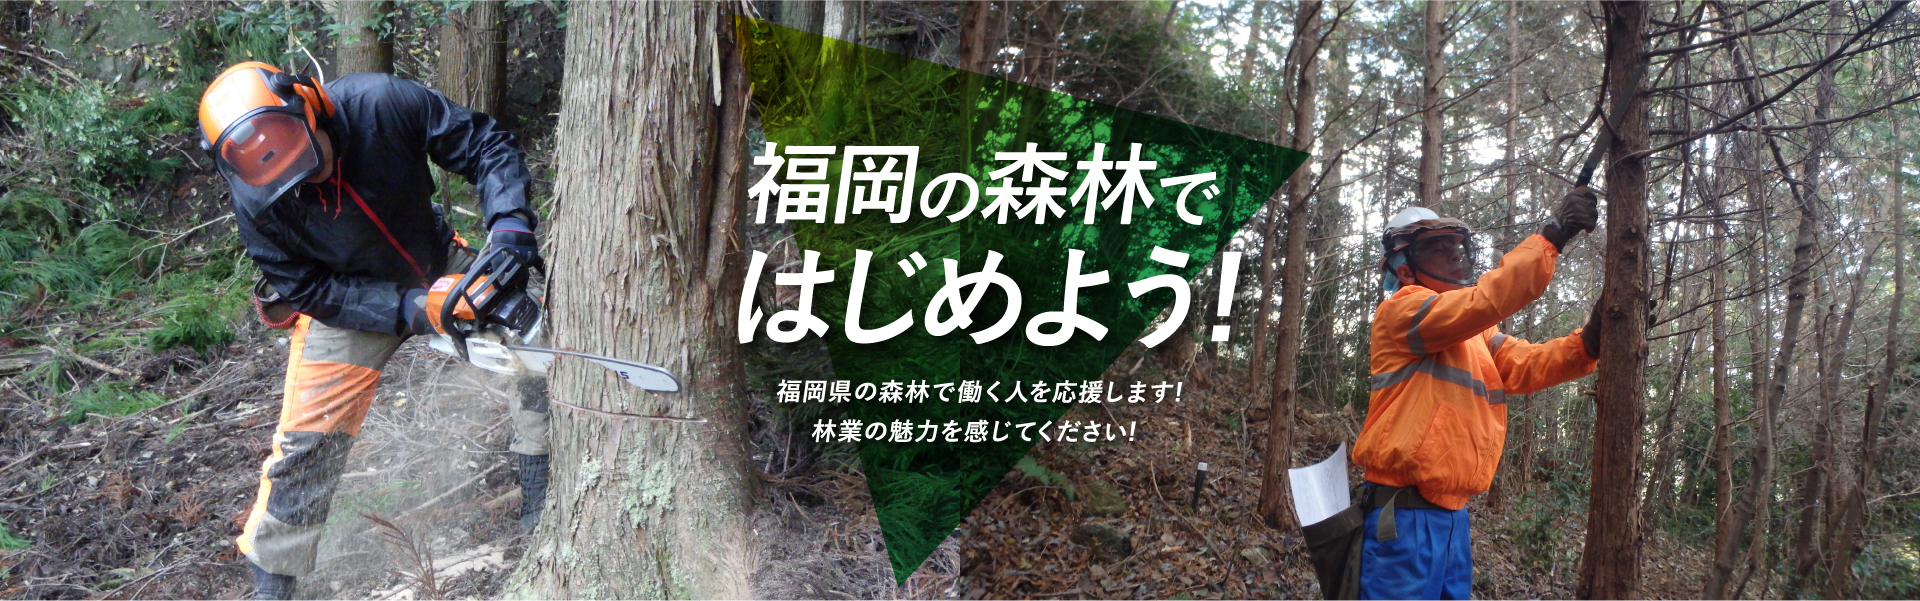 福岡の森林ではじめよう!　福岡県の森林で働く人を応援します!林業の魅力を感じてください!